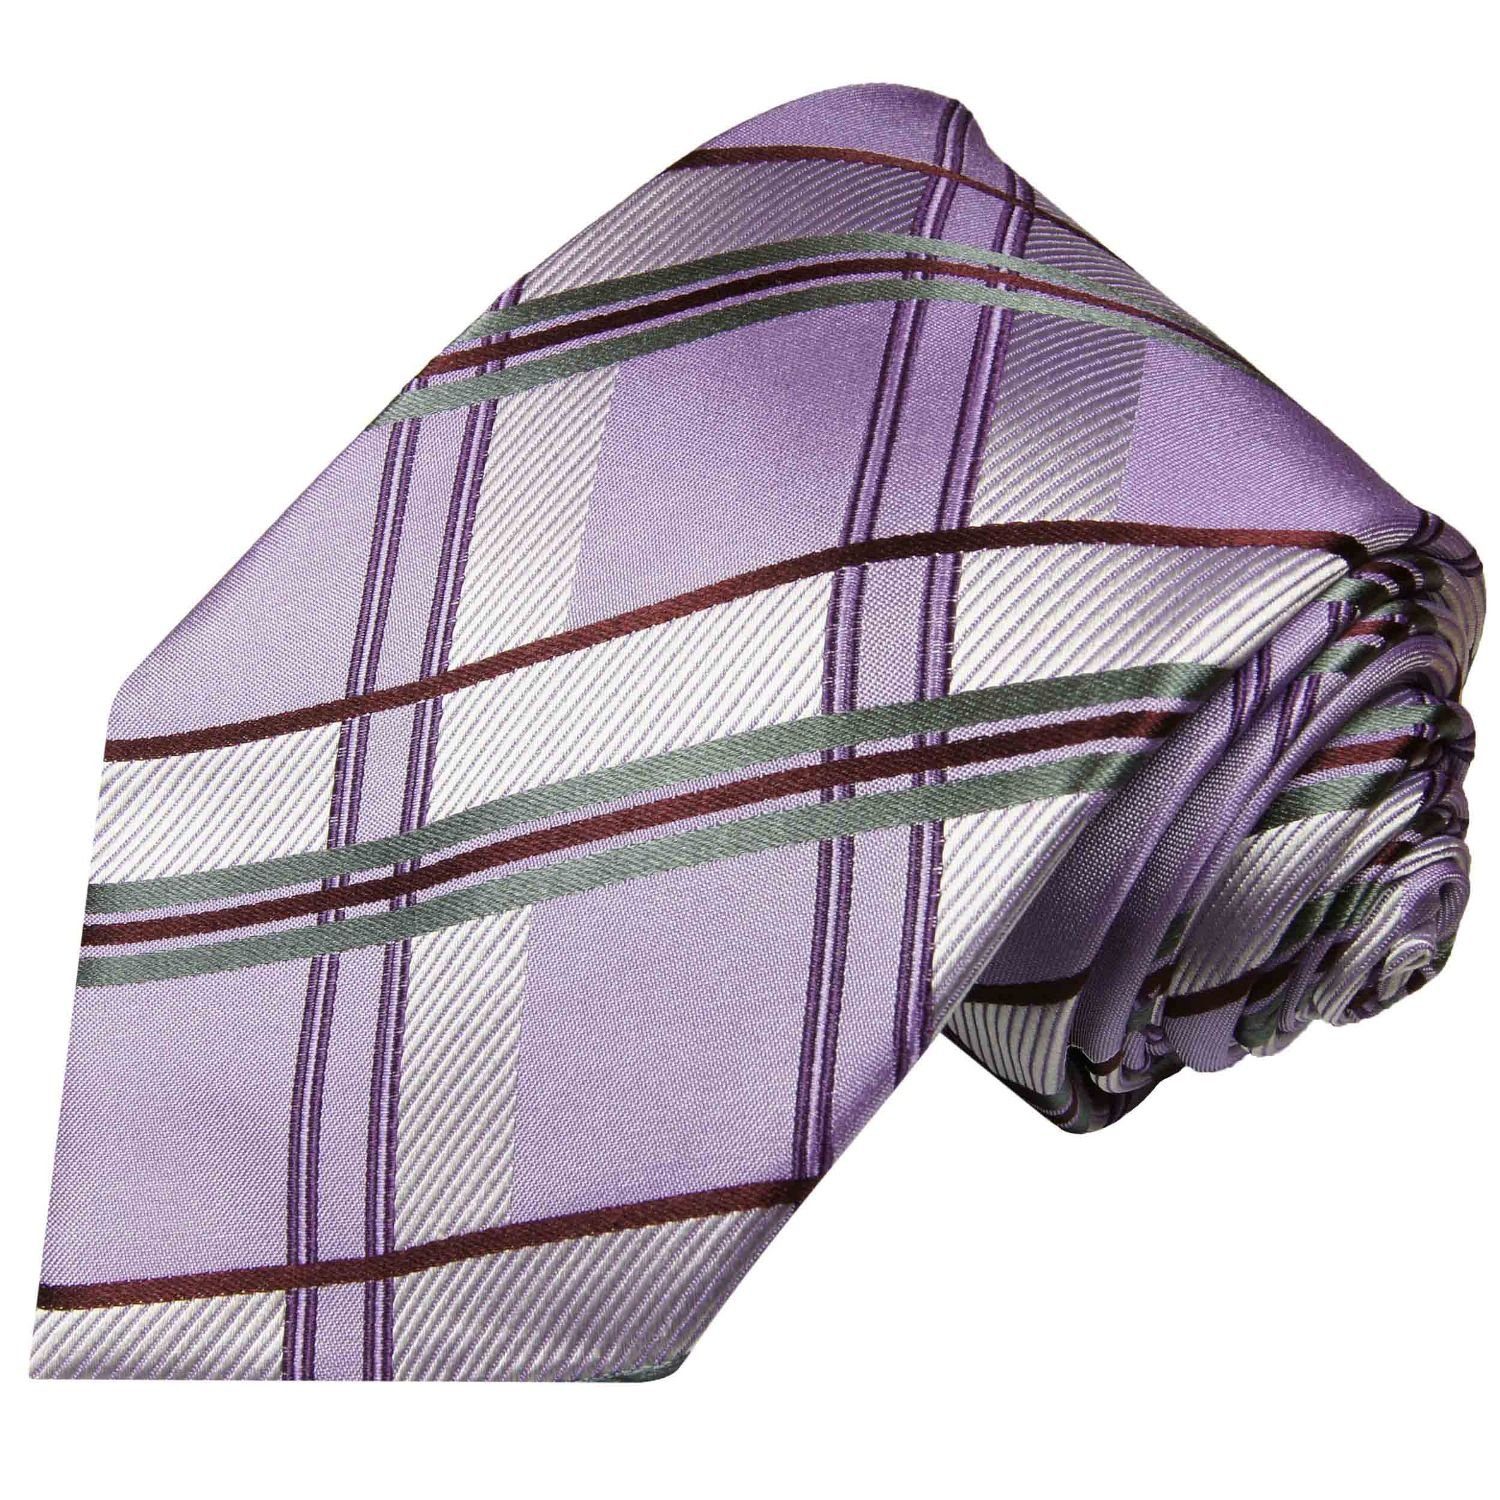 Paul Krawatte (6cm), Malone violett Einstecktuch) Seidenkrawatte modern Schottenmuster Schmal Krawatte und Herren lila grau (Set, 2-St., 507 mit Tuch silber Seide 100%